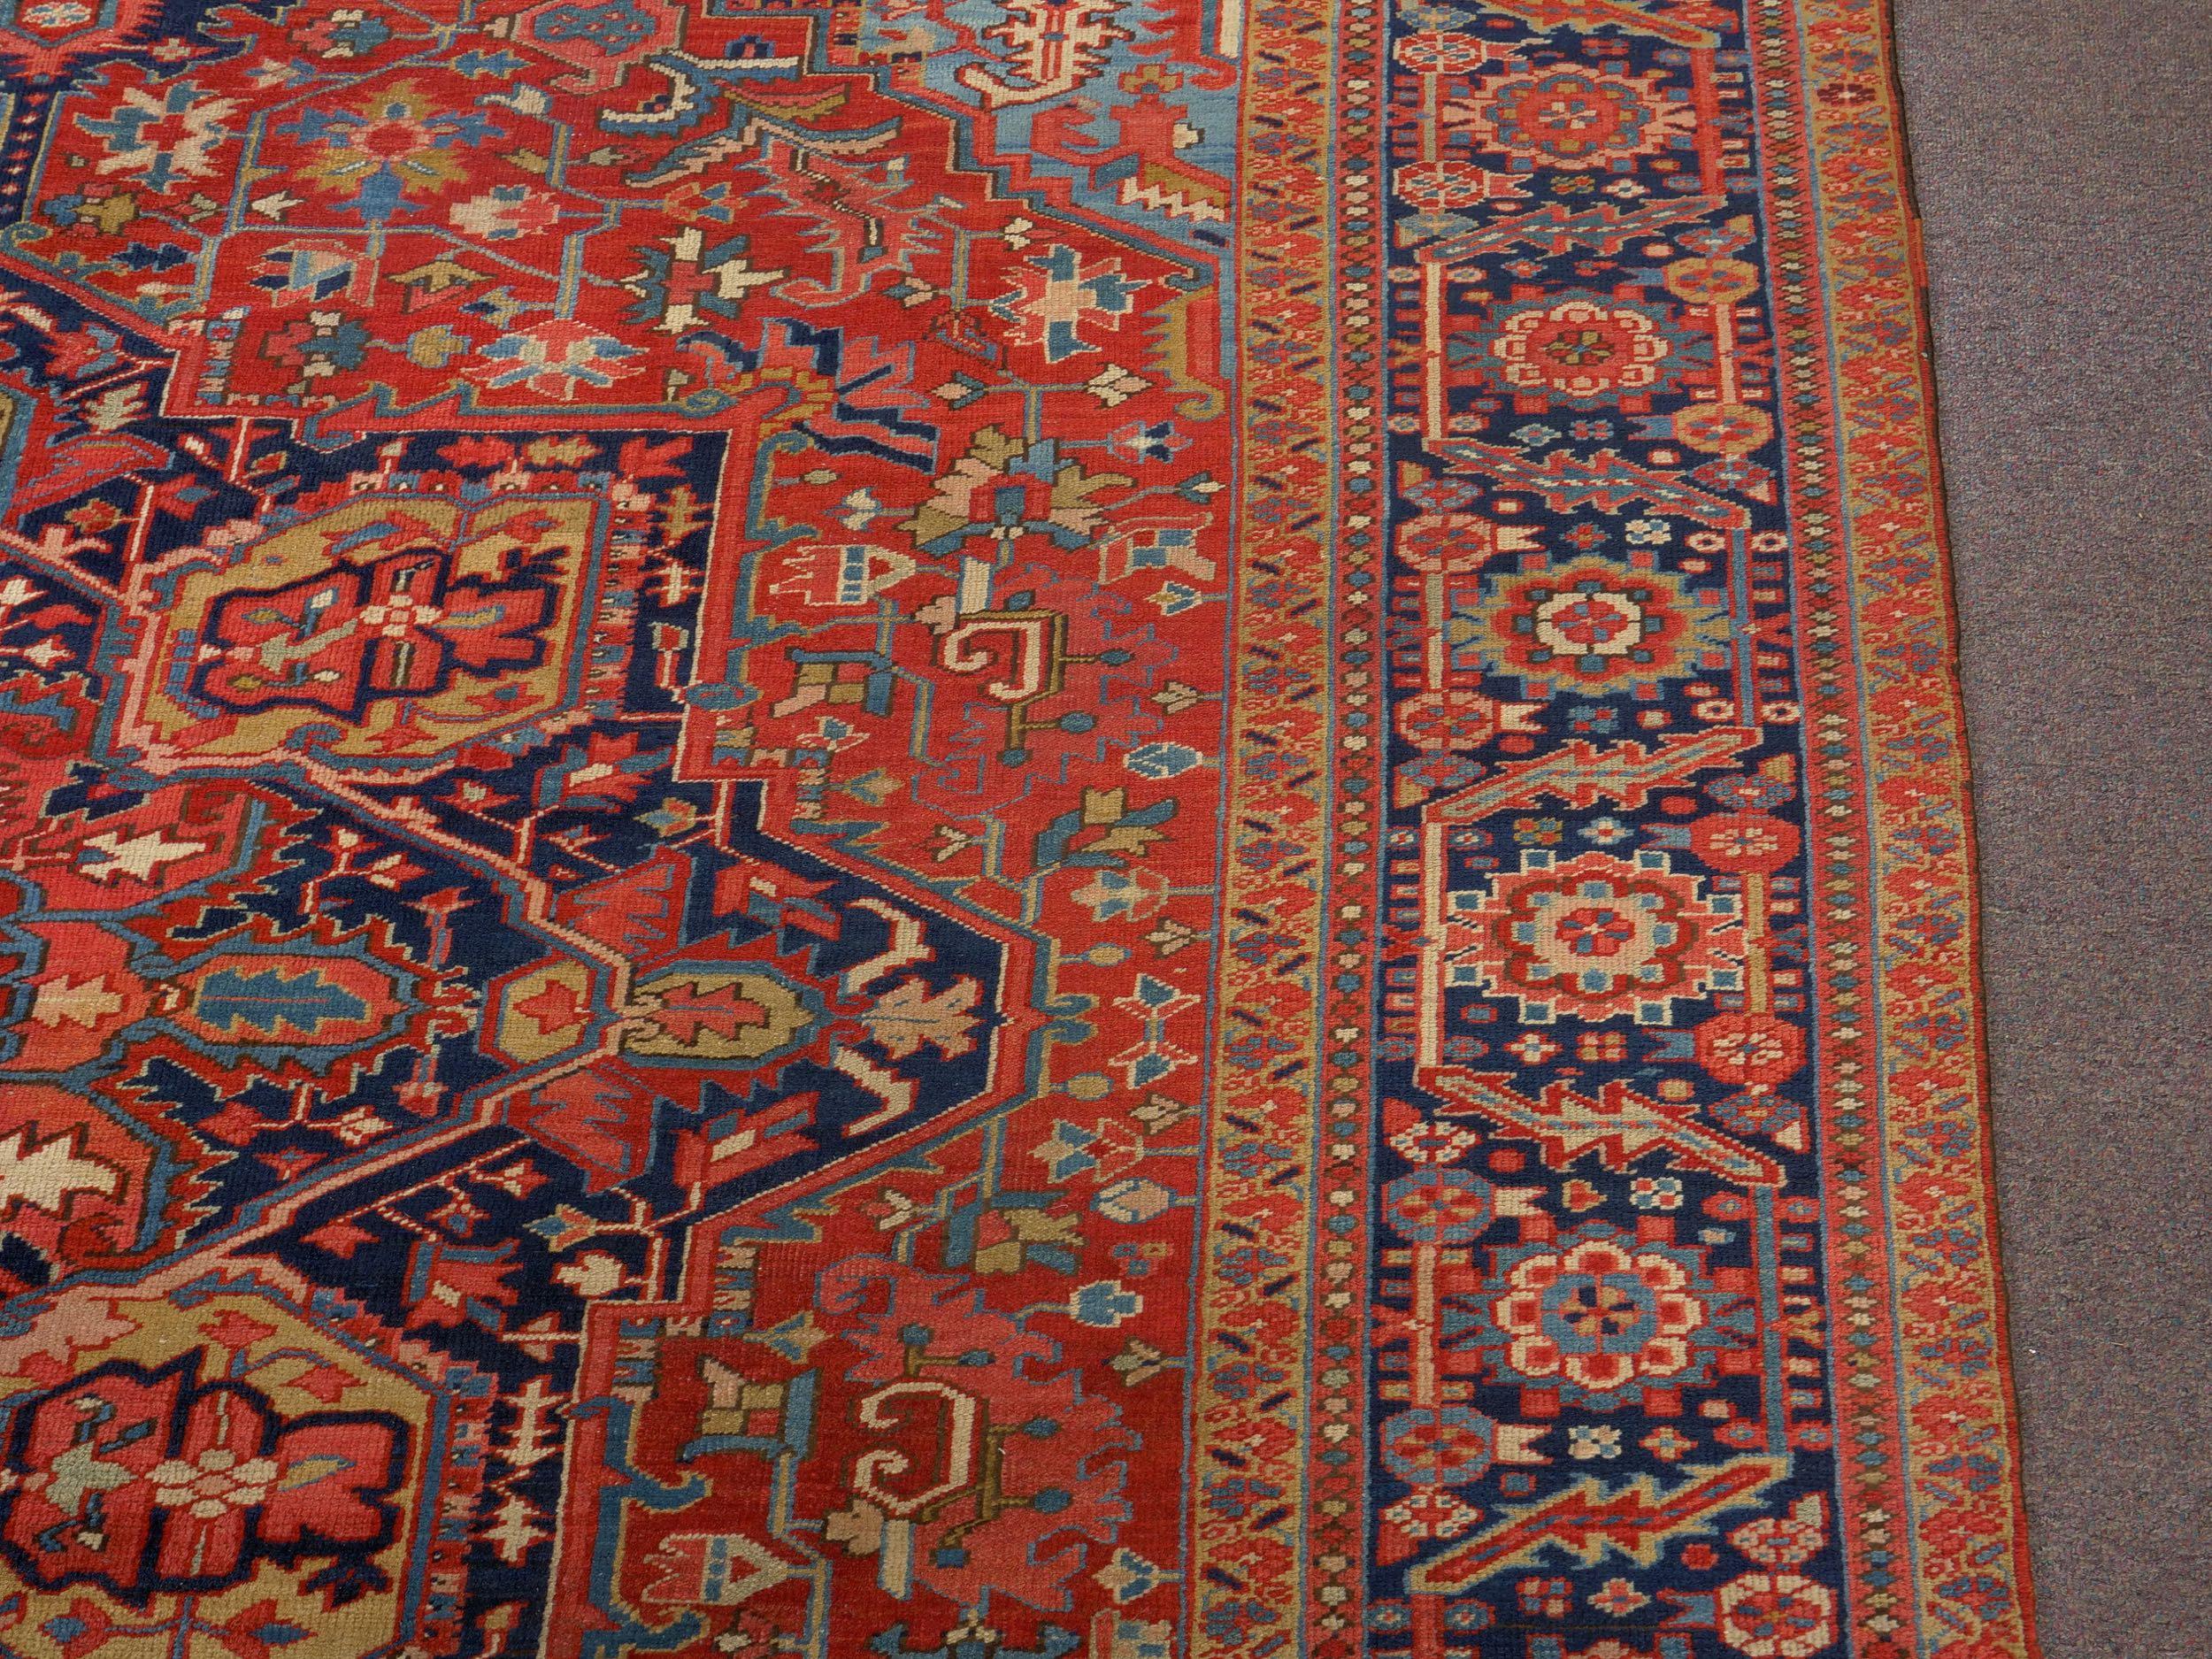 20th Century Room-Size Semi-Antique Heriz Rug Carpet, circa 1930